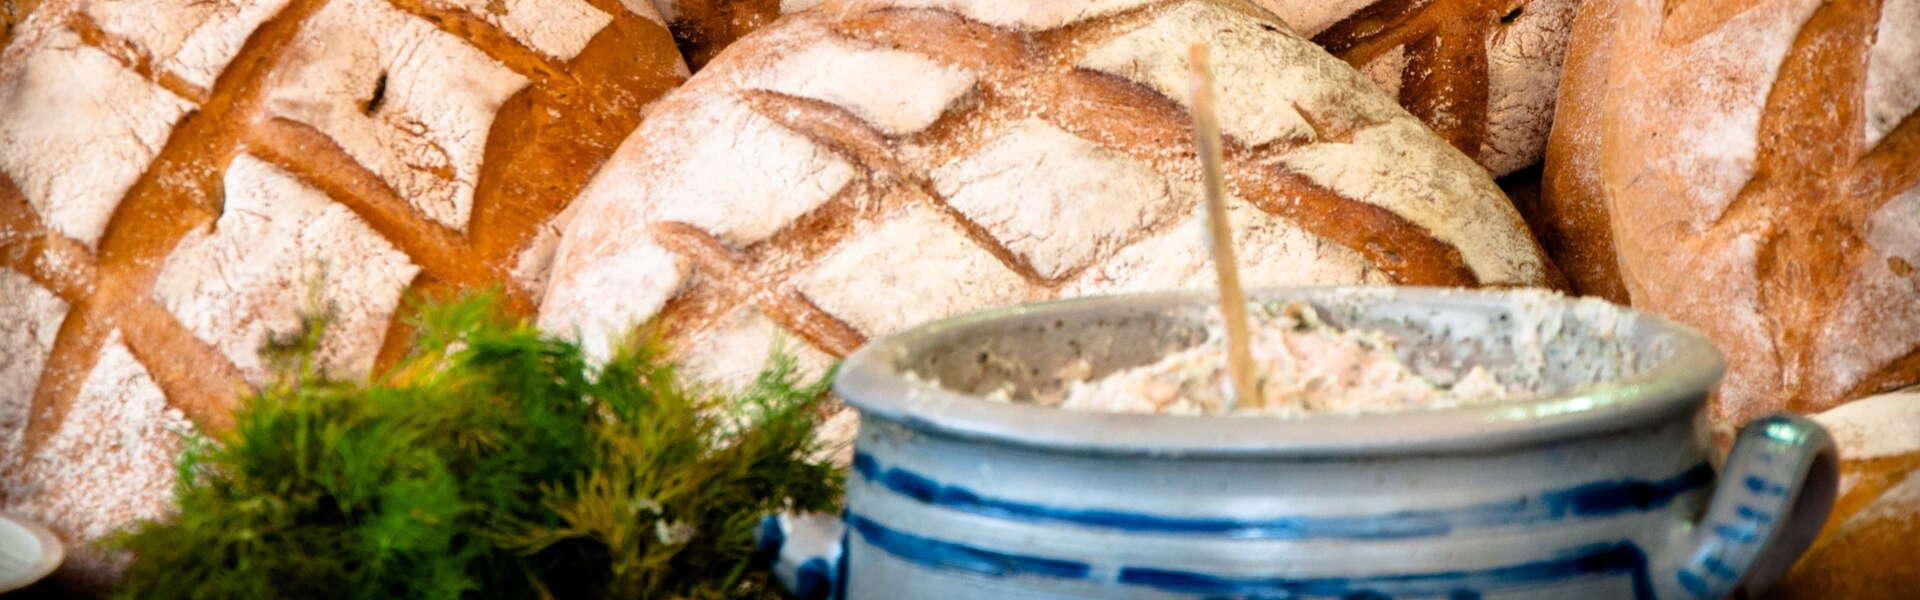 bochenki chleba i smalec w naczyniu